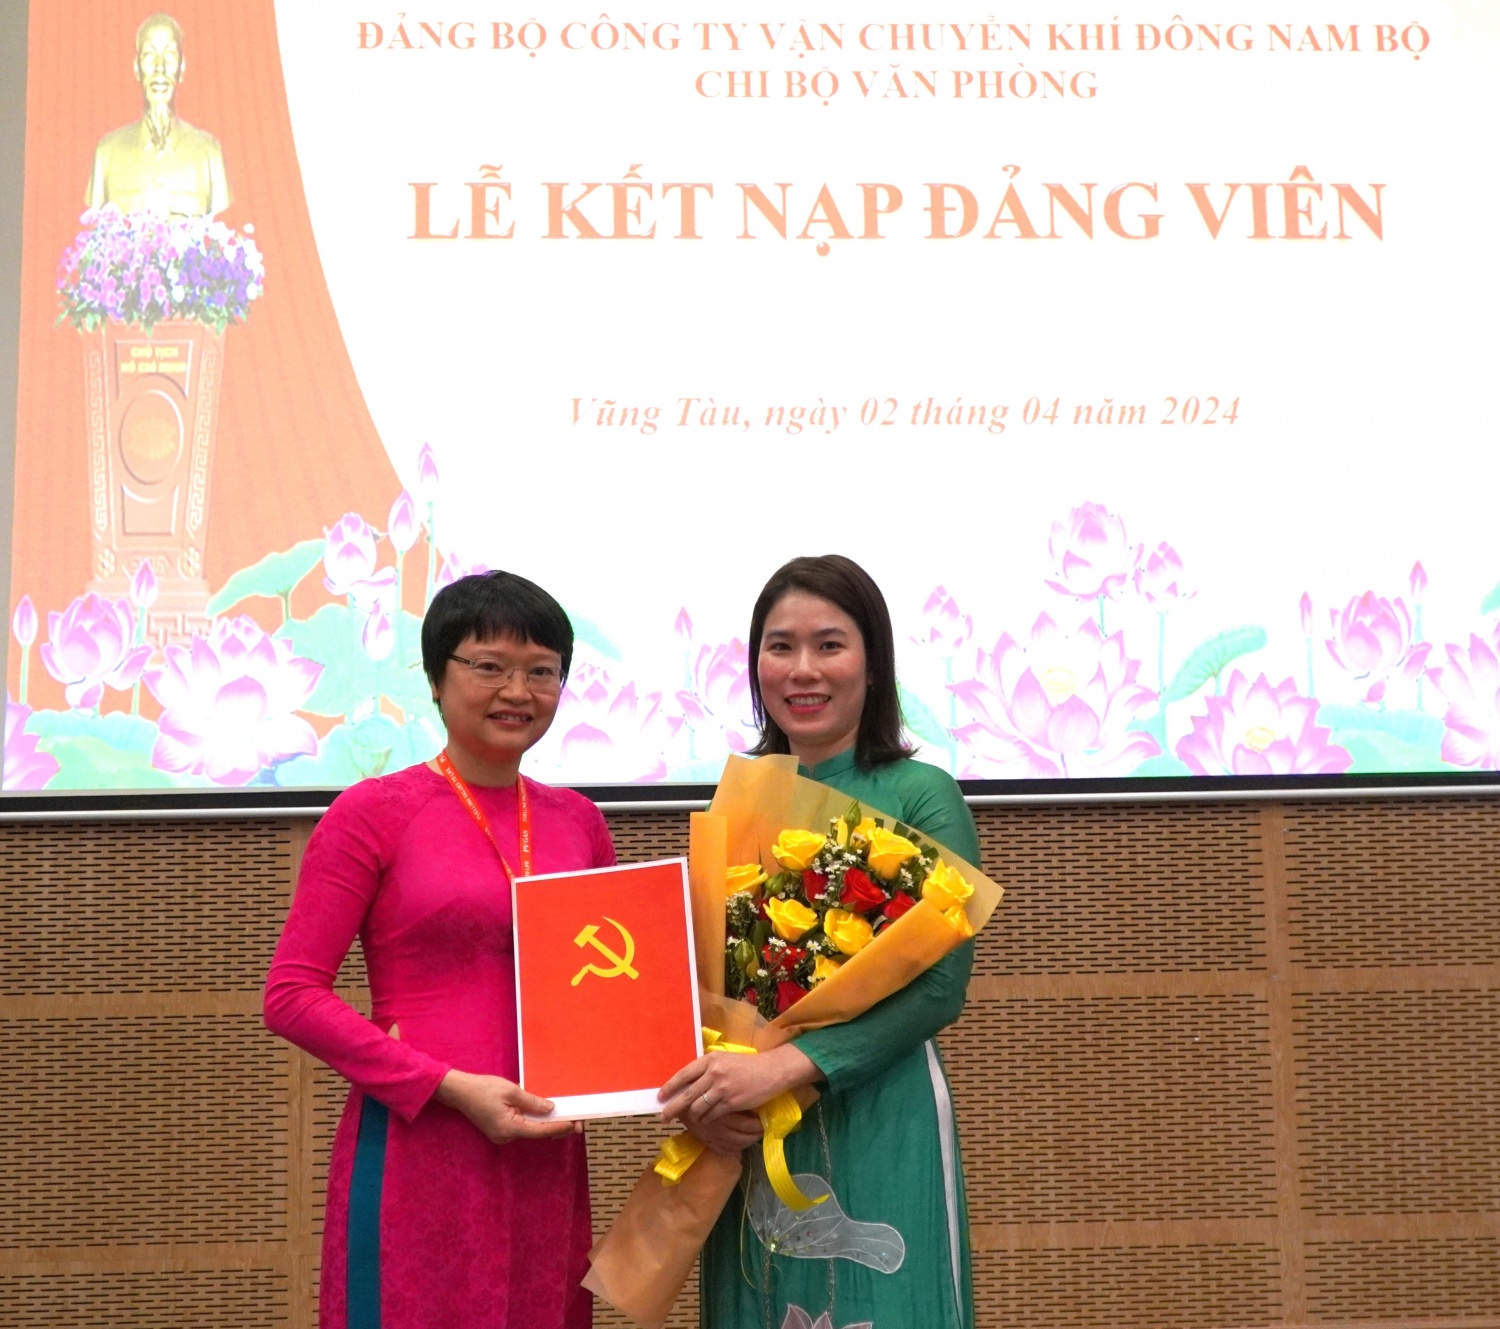 Đồng chí Nguyễn Thị Thanh Hà trao Quyết định kết nạp đảng viên và tặng hoa chúc mừng đồng chí Nguyễn Khánh Vân